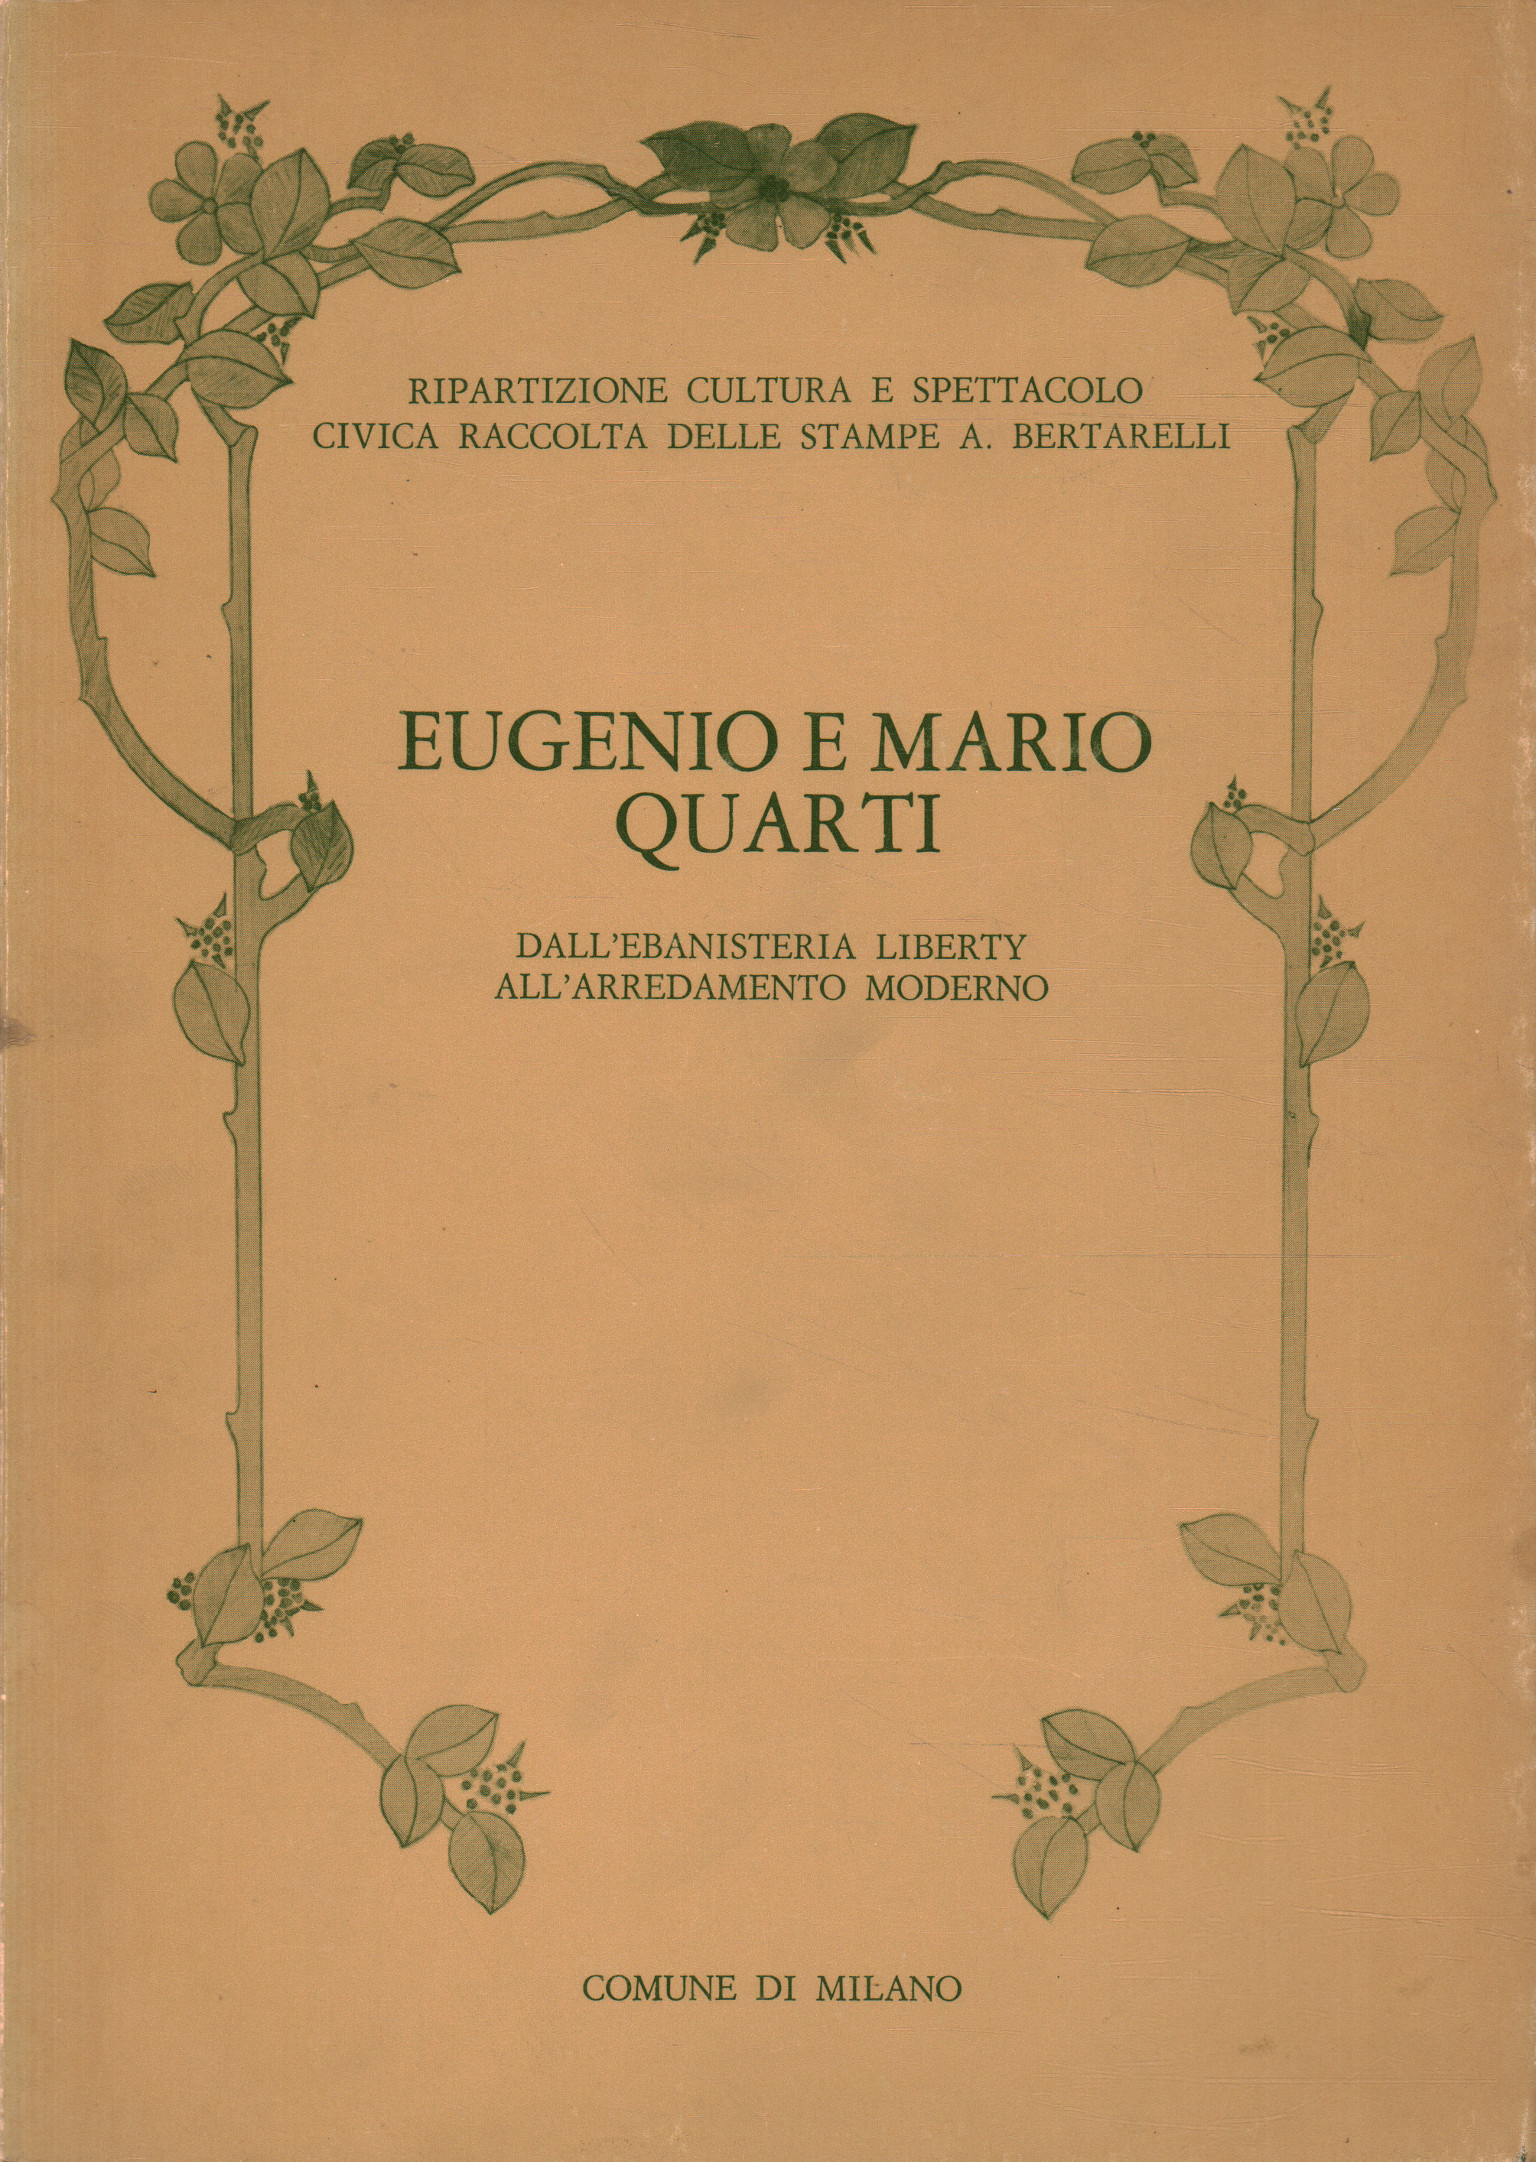 Eugenio und Mario Quarti